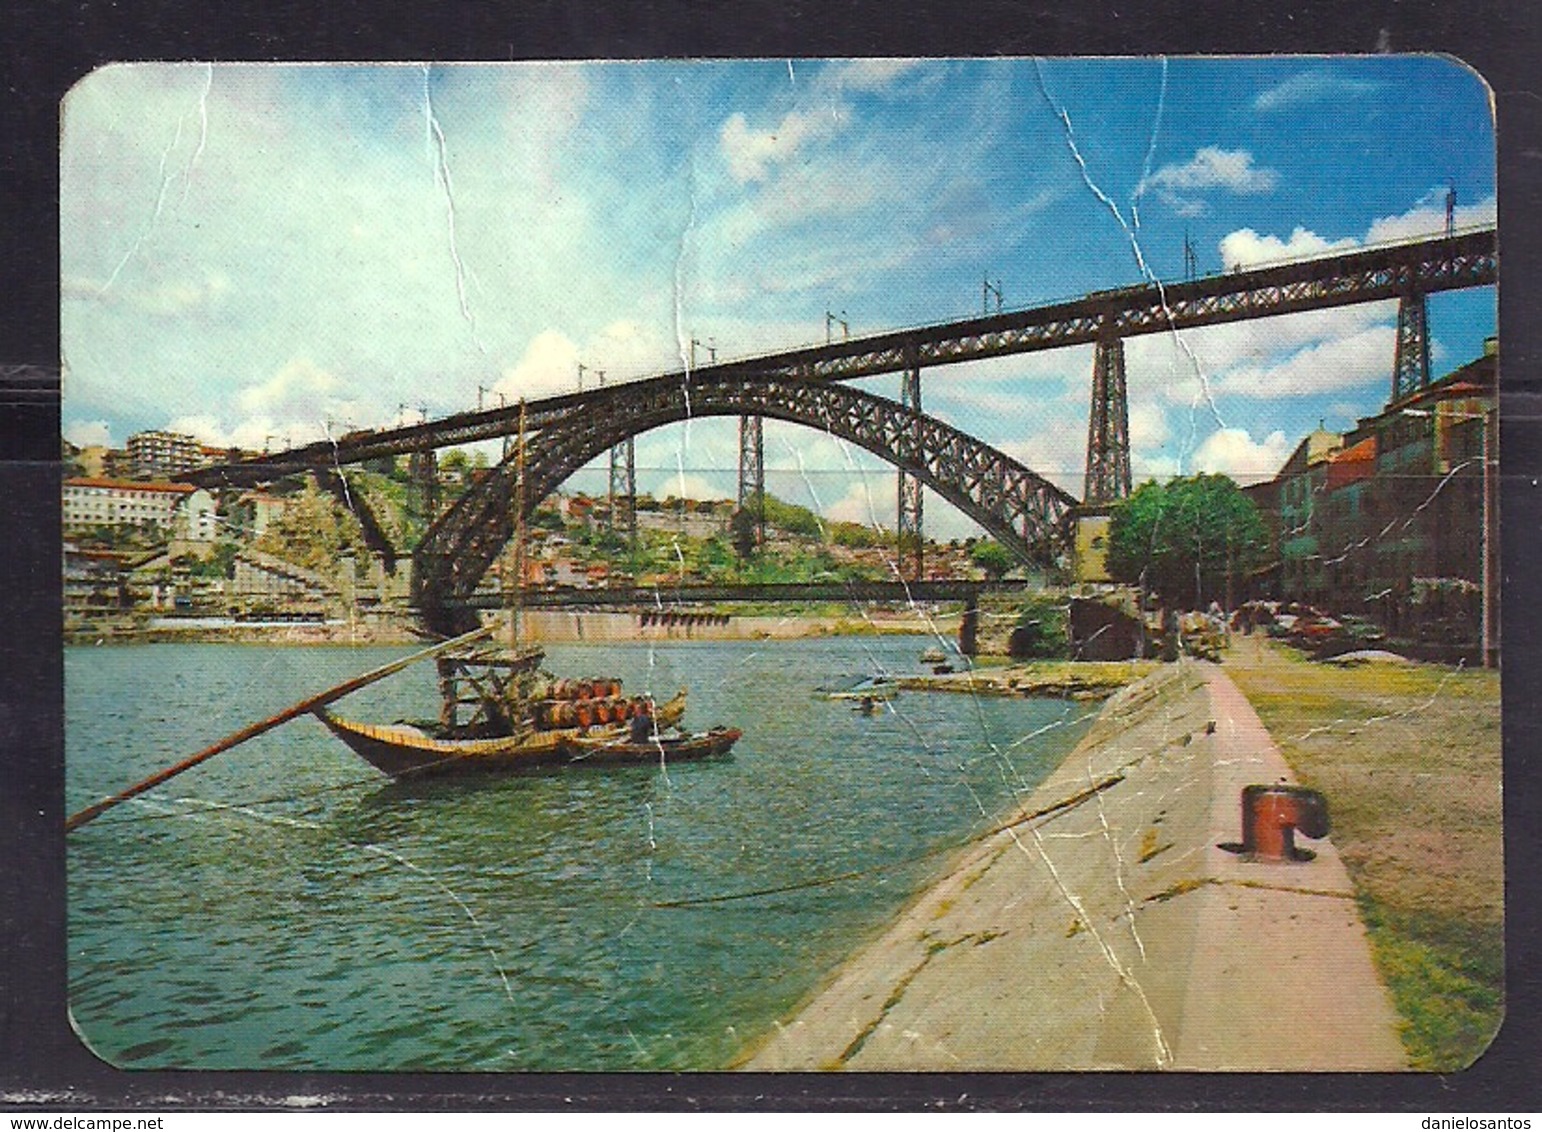 1988 Pocket Calendar Calandrier Calendario Portugal Lugares Cidades Porto Oporto Pontes Bridges - Grand Format : 1981-90